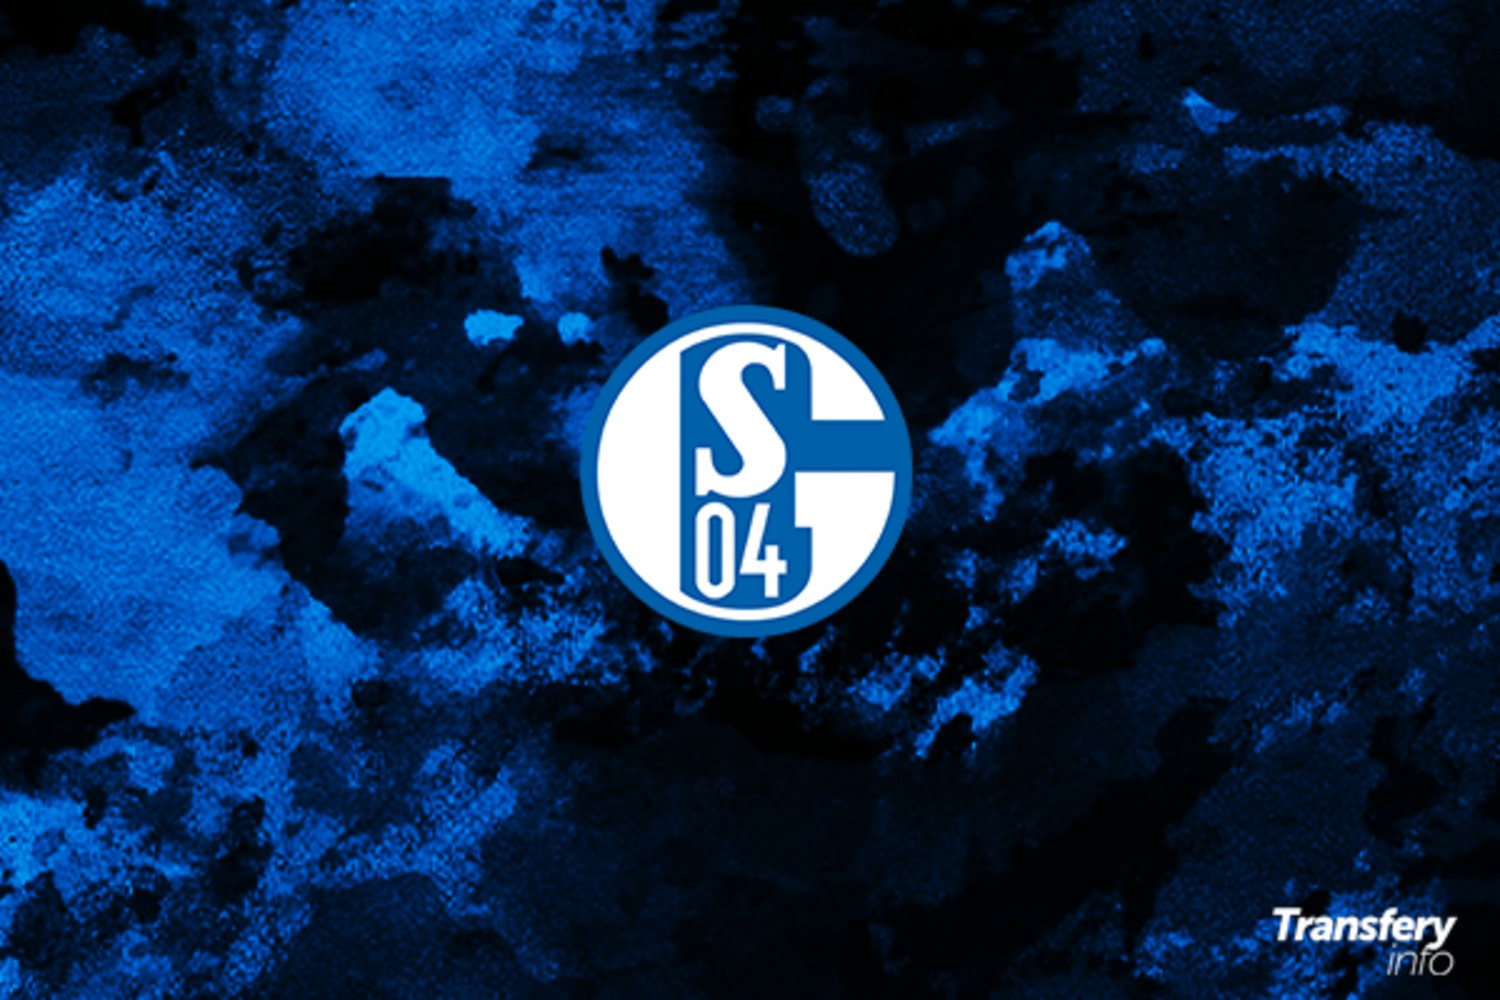 OFICJALNIE: Schalke przygotowuje się do walki o Bundesligę. Pierwszy letni transfer